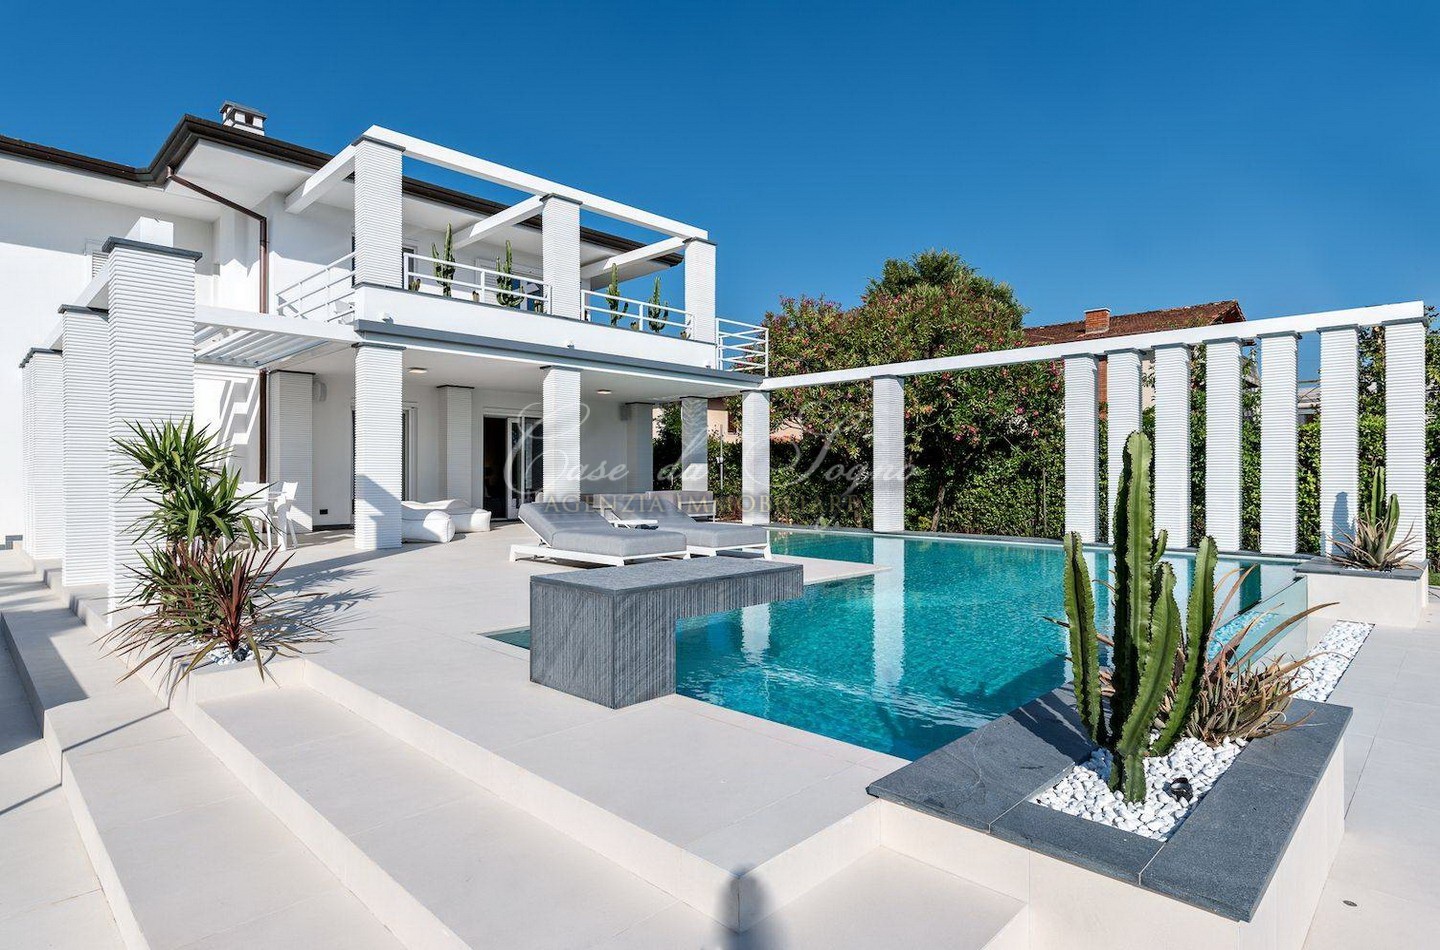 320 - cover Villa design